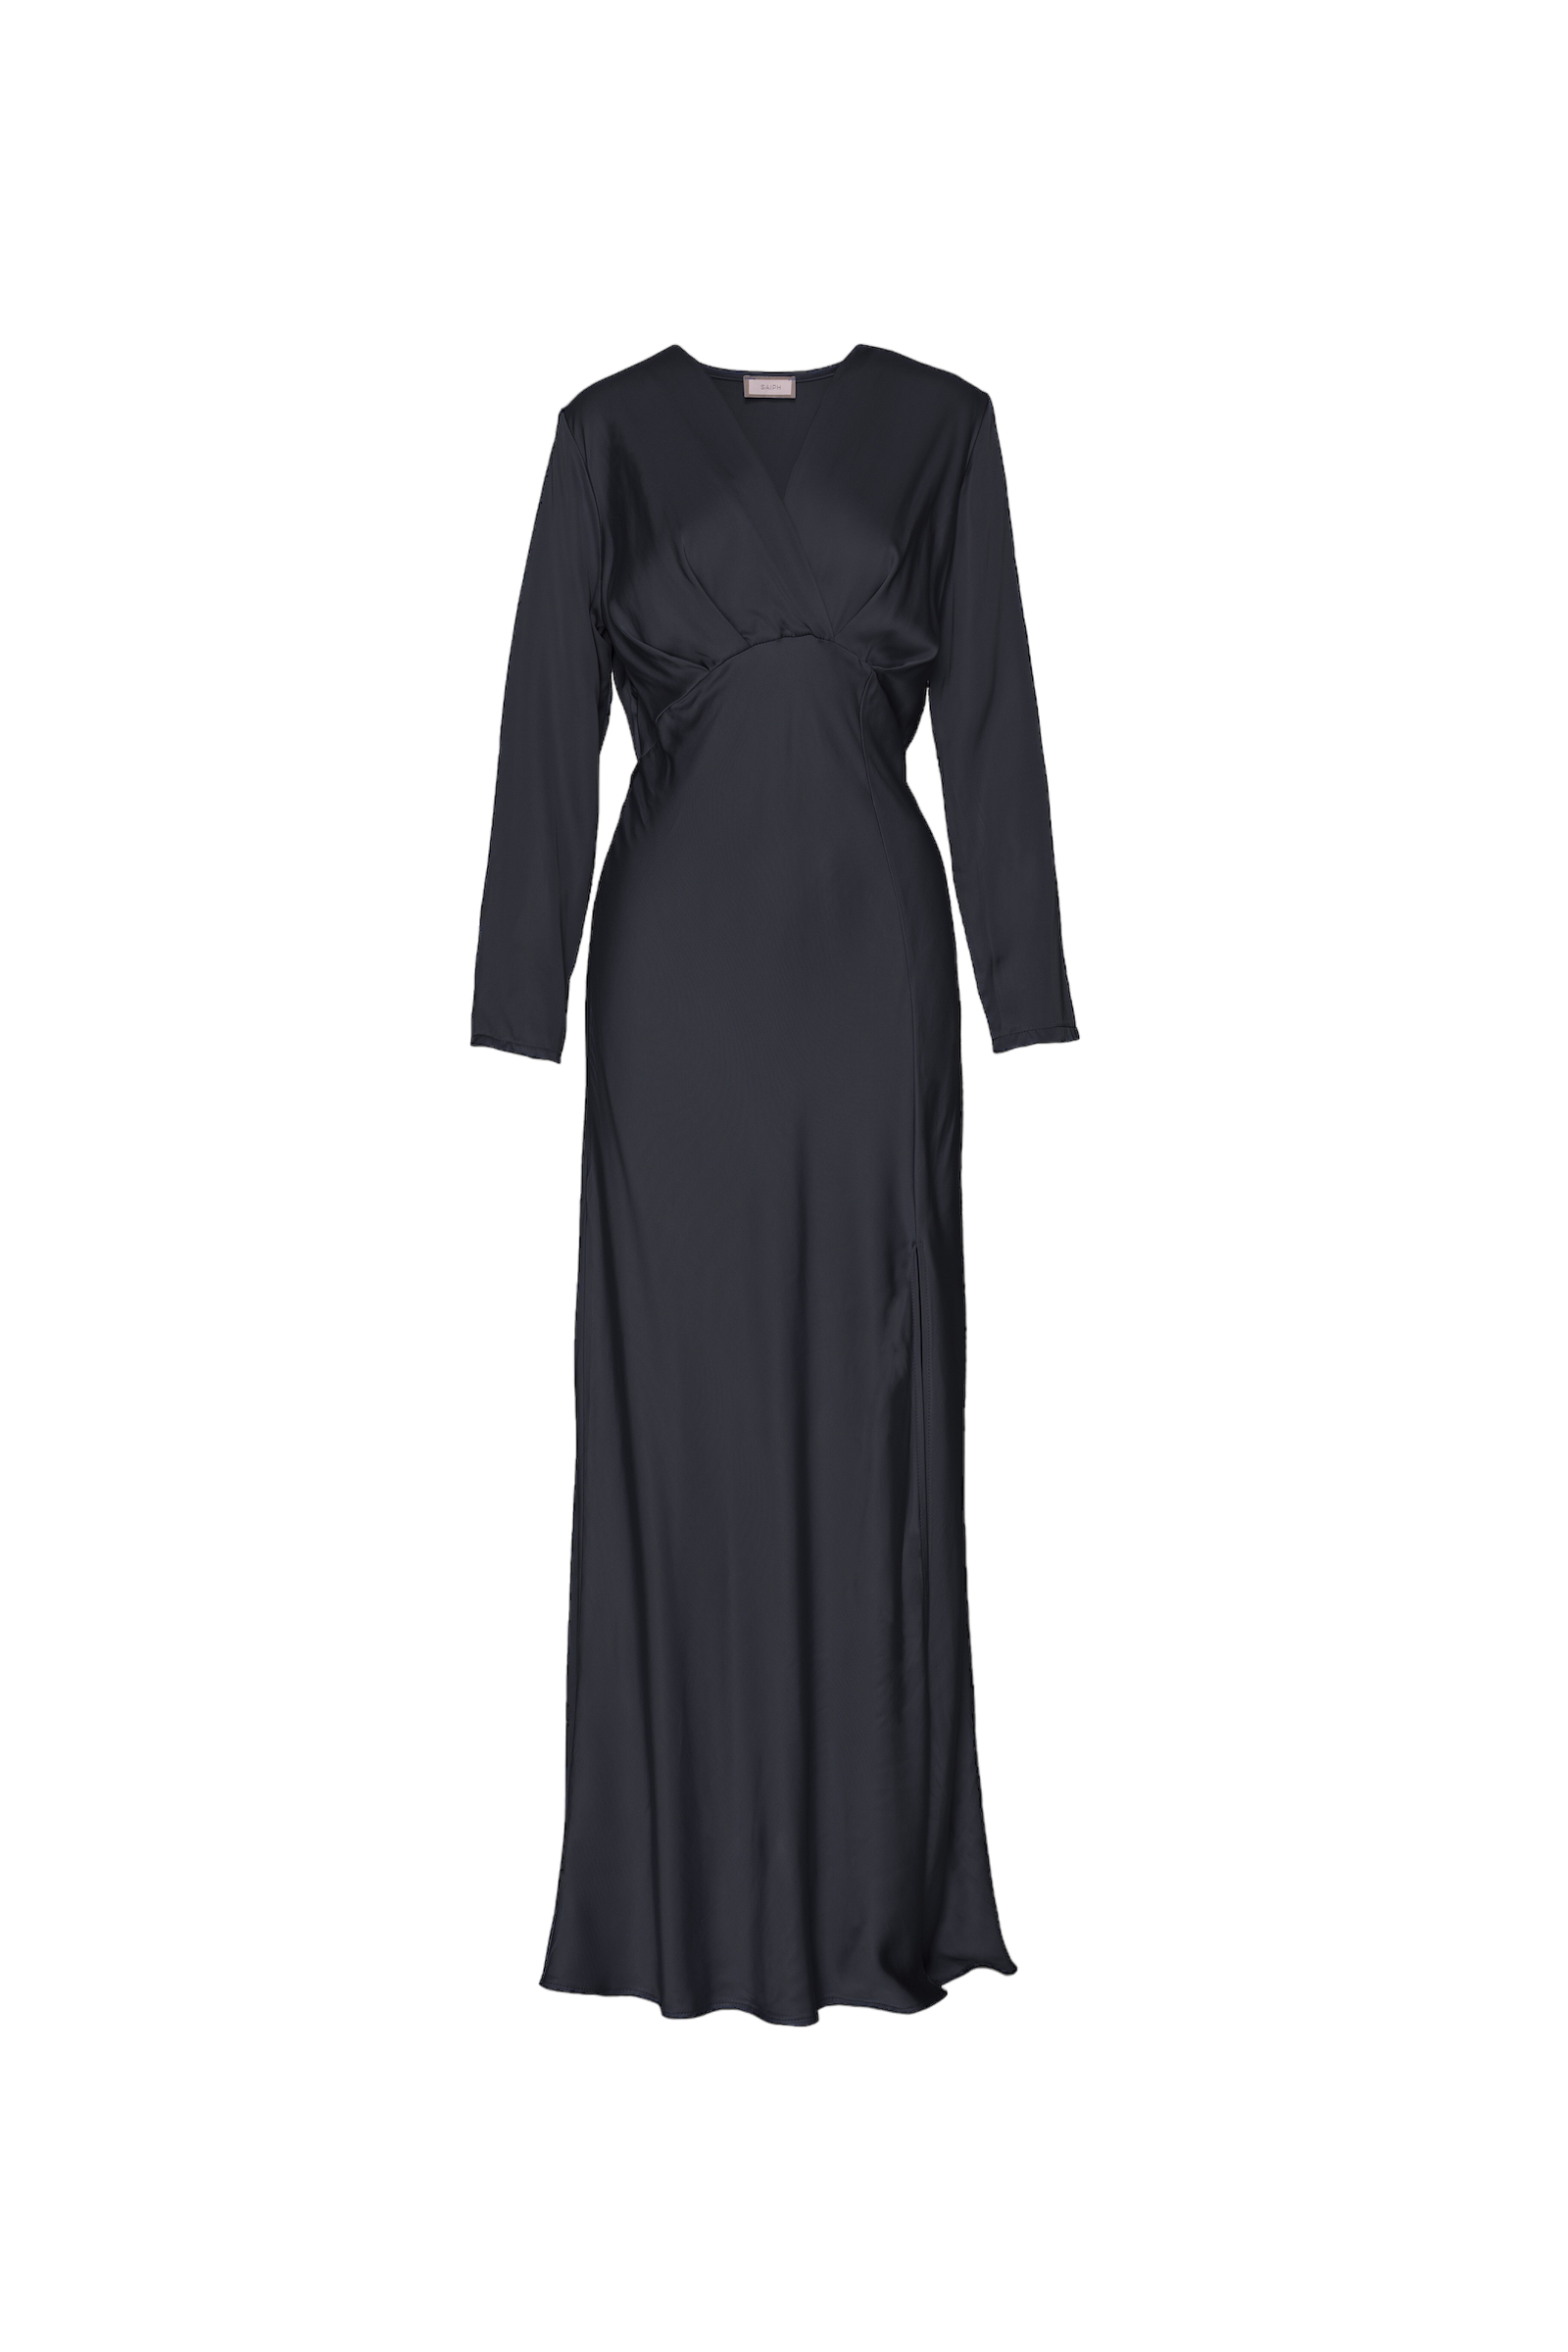 Saiph black dress